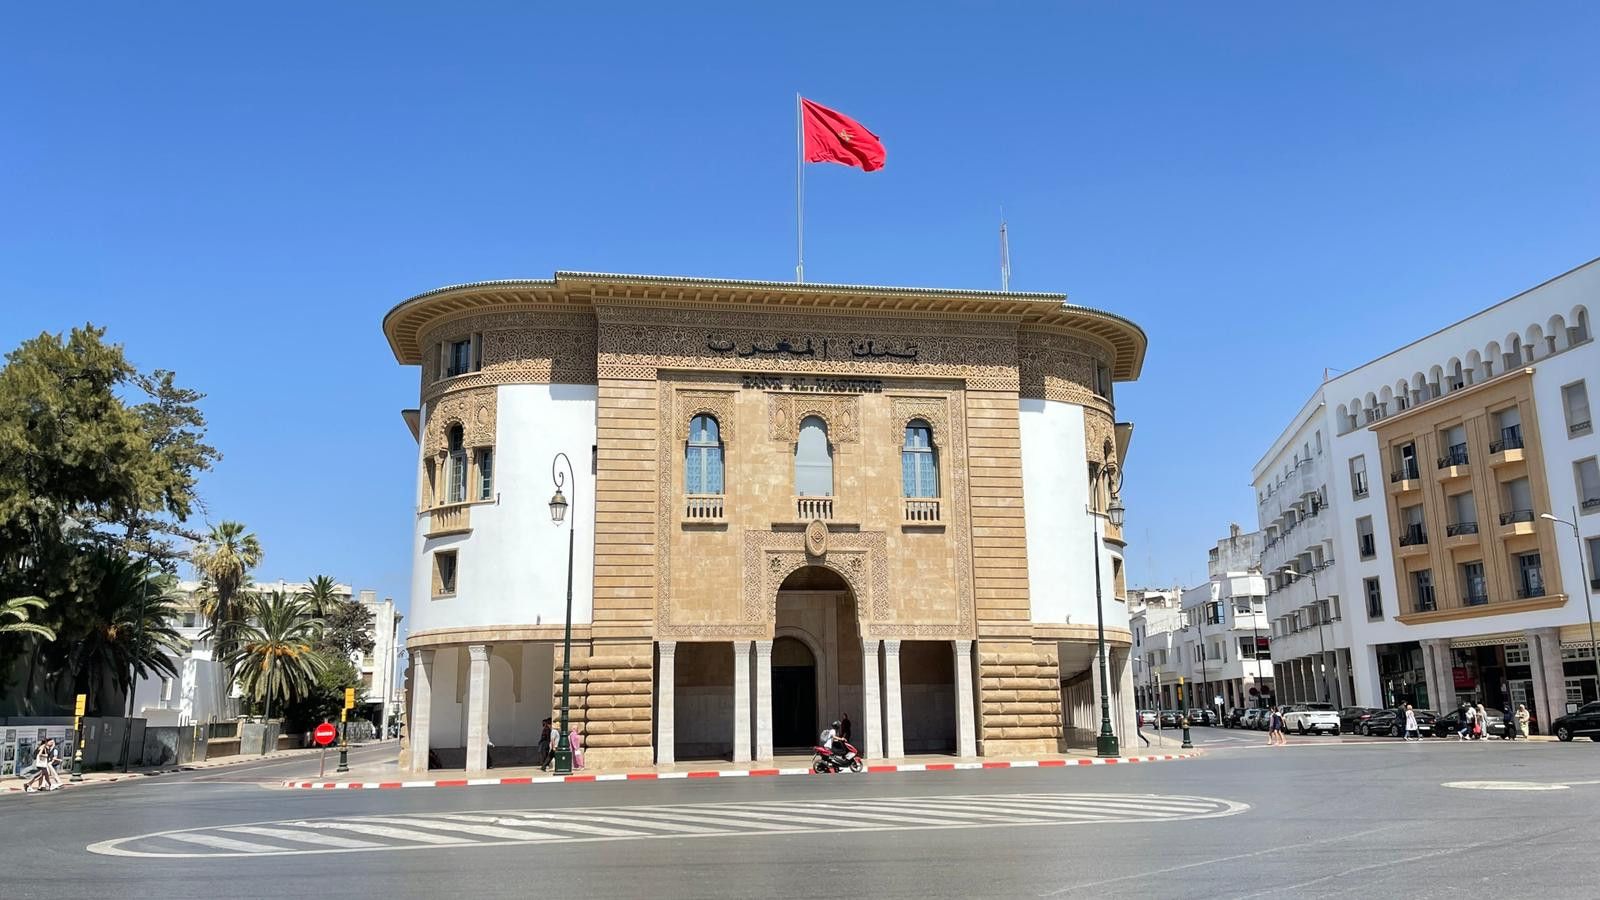 بنك المغرب يبقي سعر الفائدة دون تغيير عند 3% للمرة الثالثة